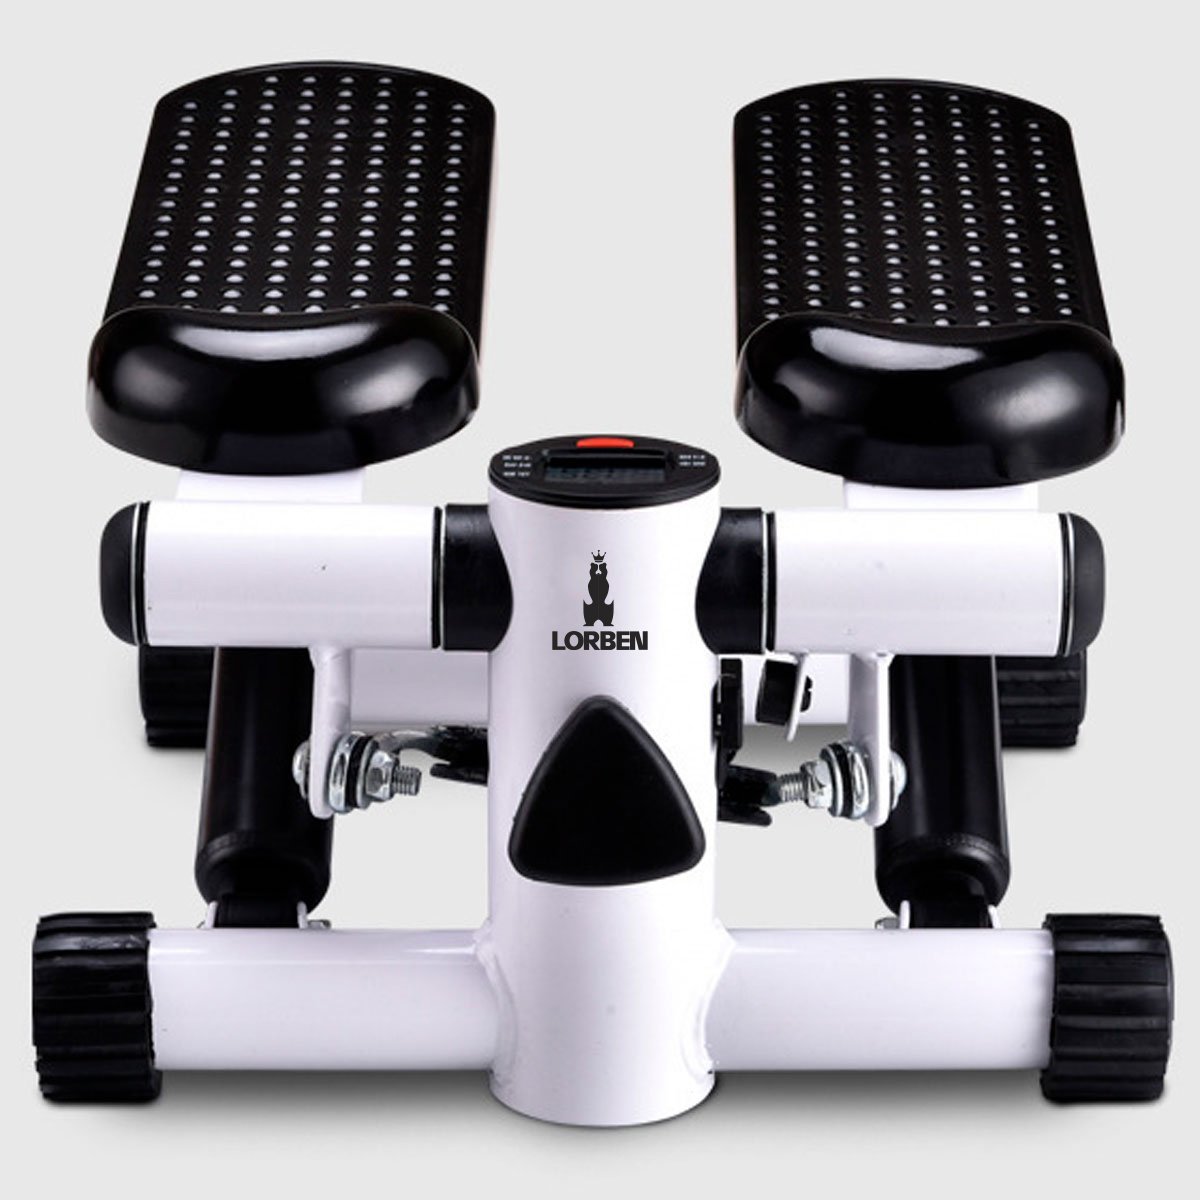 Mini Stepper Simulador de Caminhada com Monitor LCD Exercícios Pernas Glúteos Lorben - 2